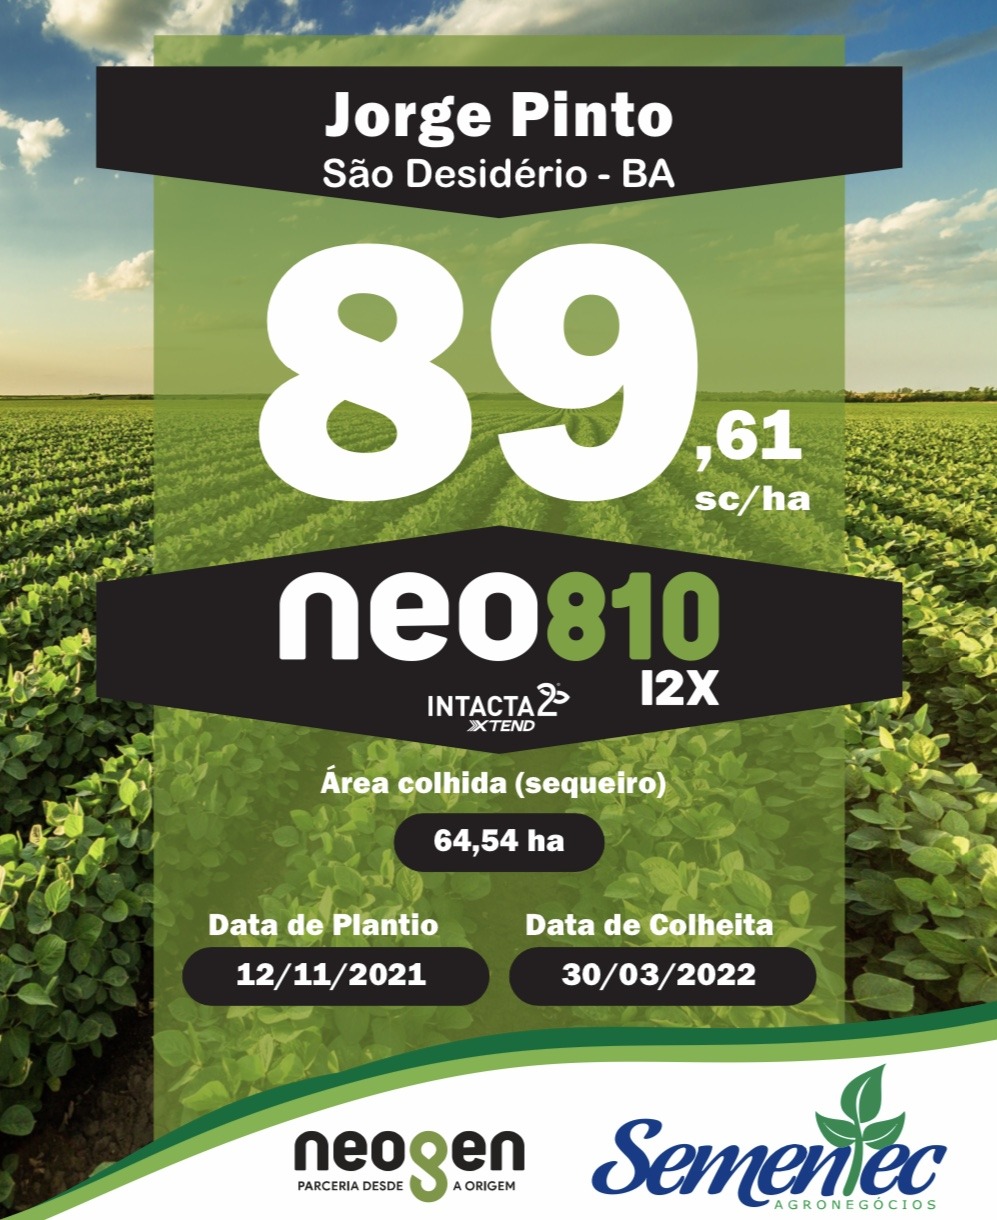 NEO 810 i2x